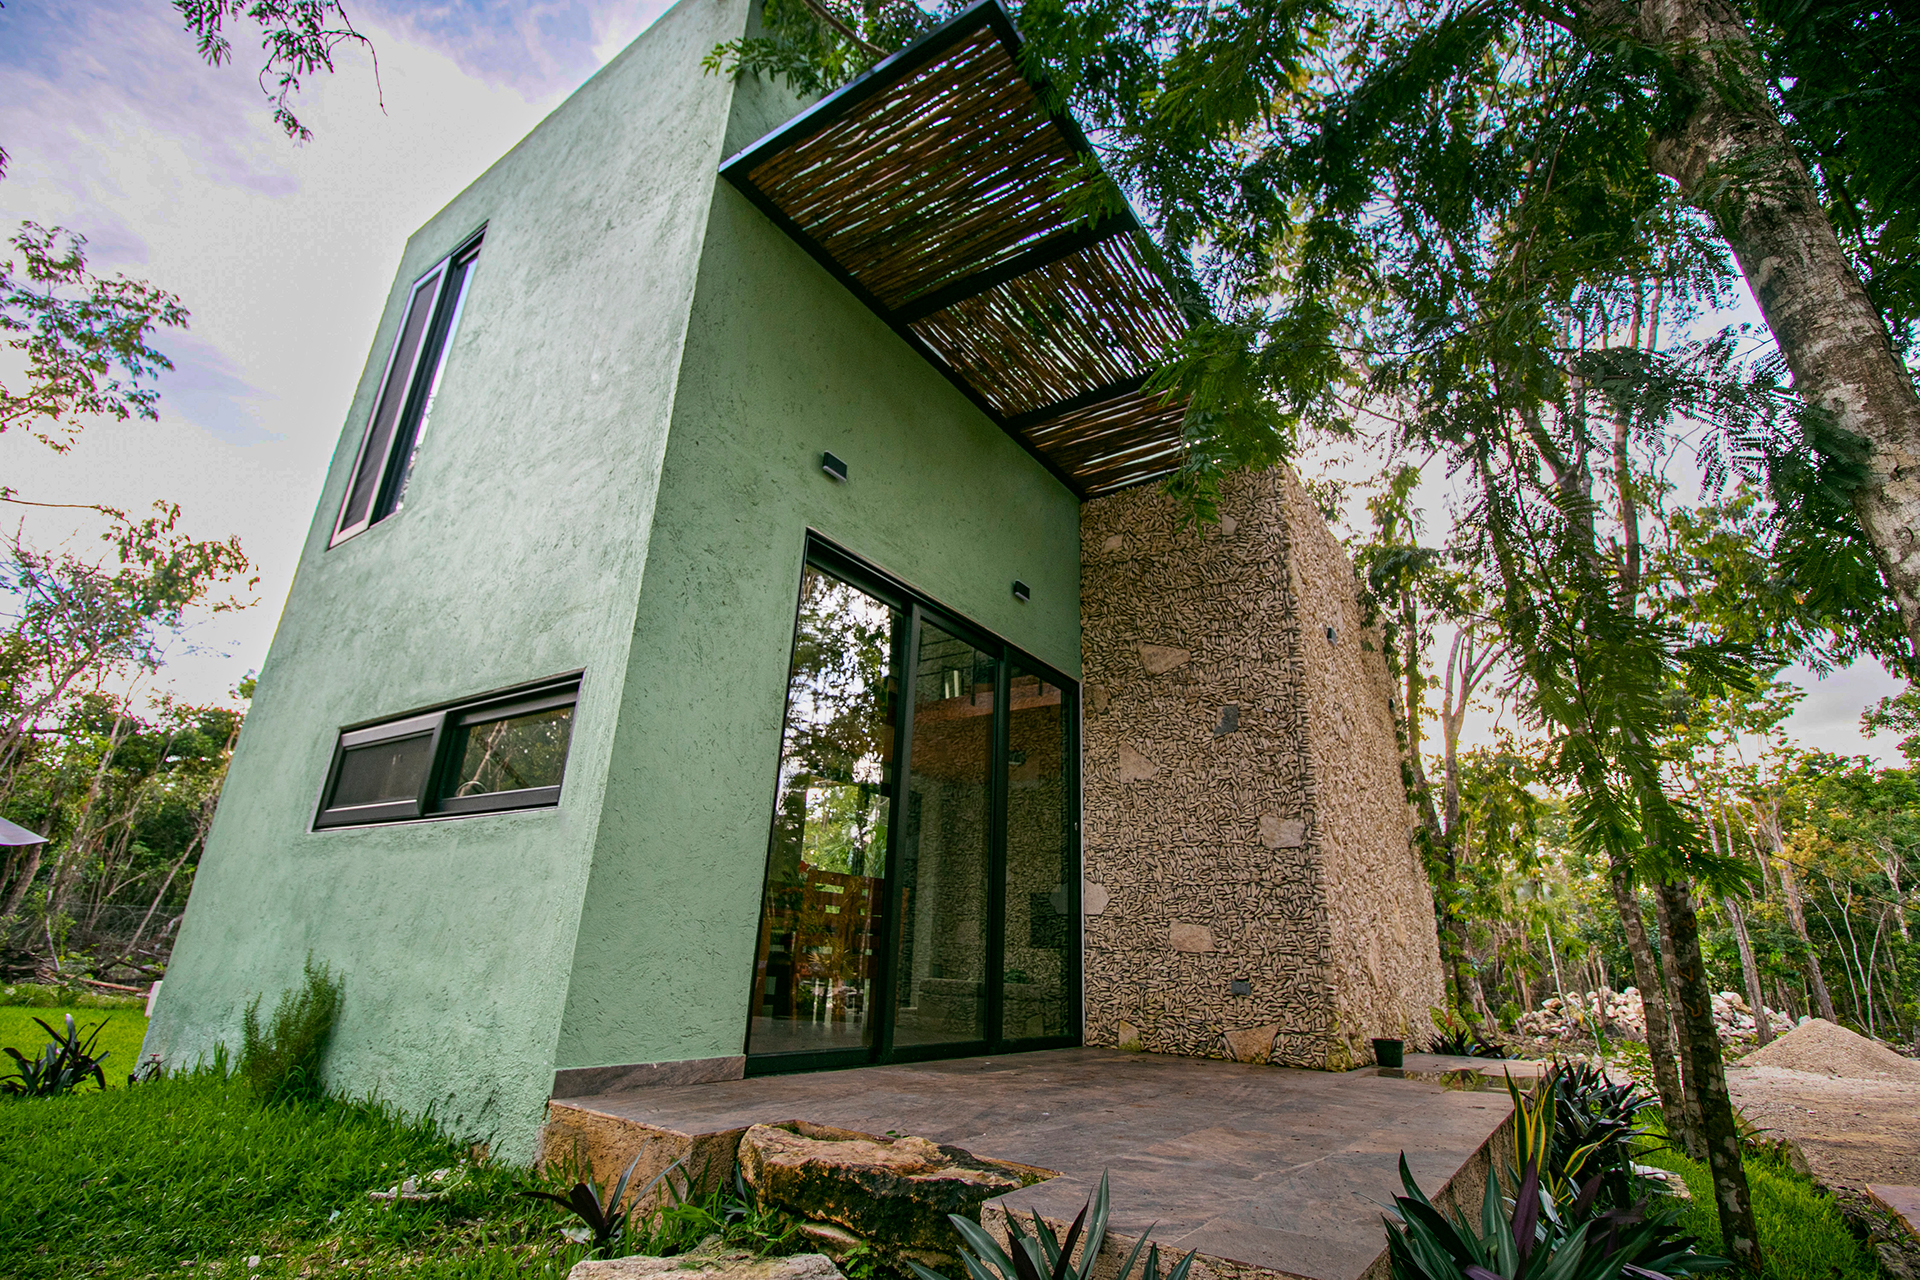 Villa Violeta, lugar de hospedaje Cozumel, jardin, Cozumel